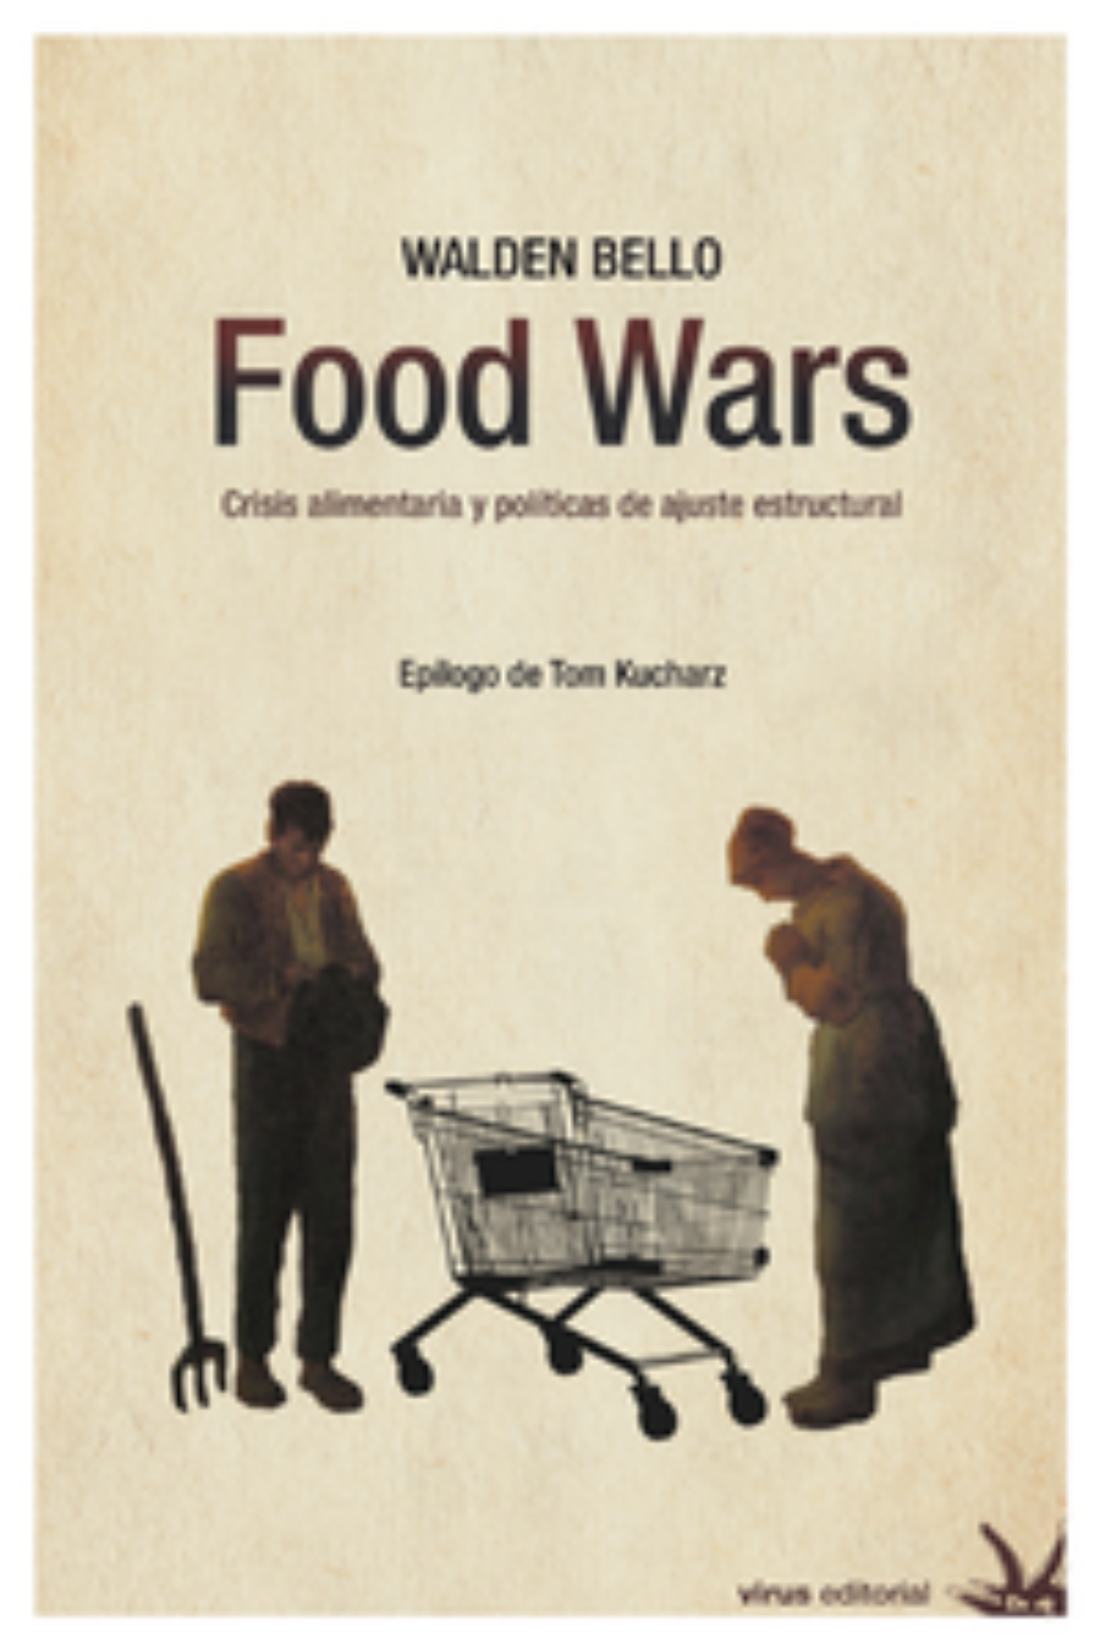 Presentación del libro de Walden Bello «Food Wars. Crisis alimentaria y políticas de ajuste estructural»